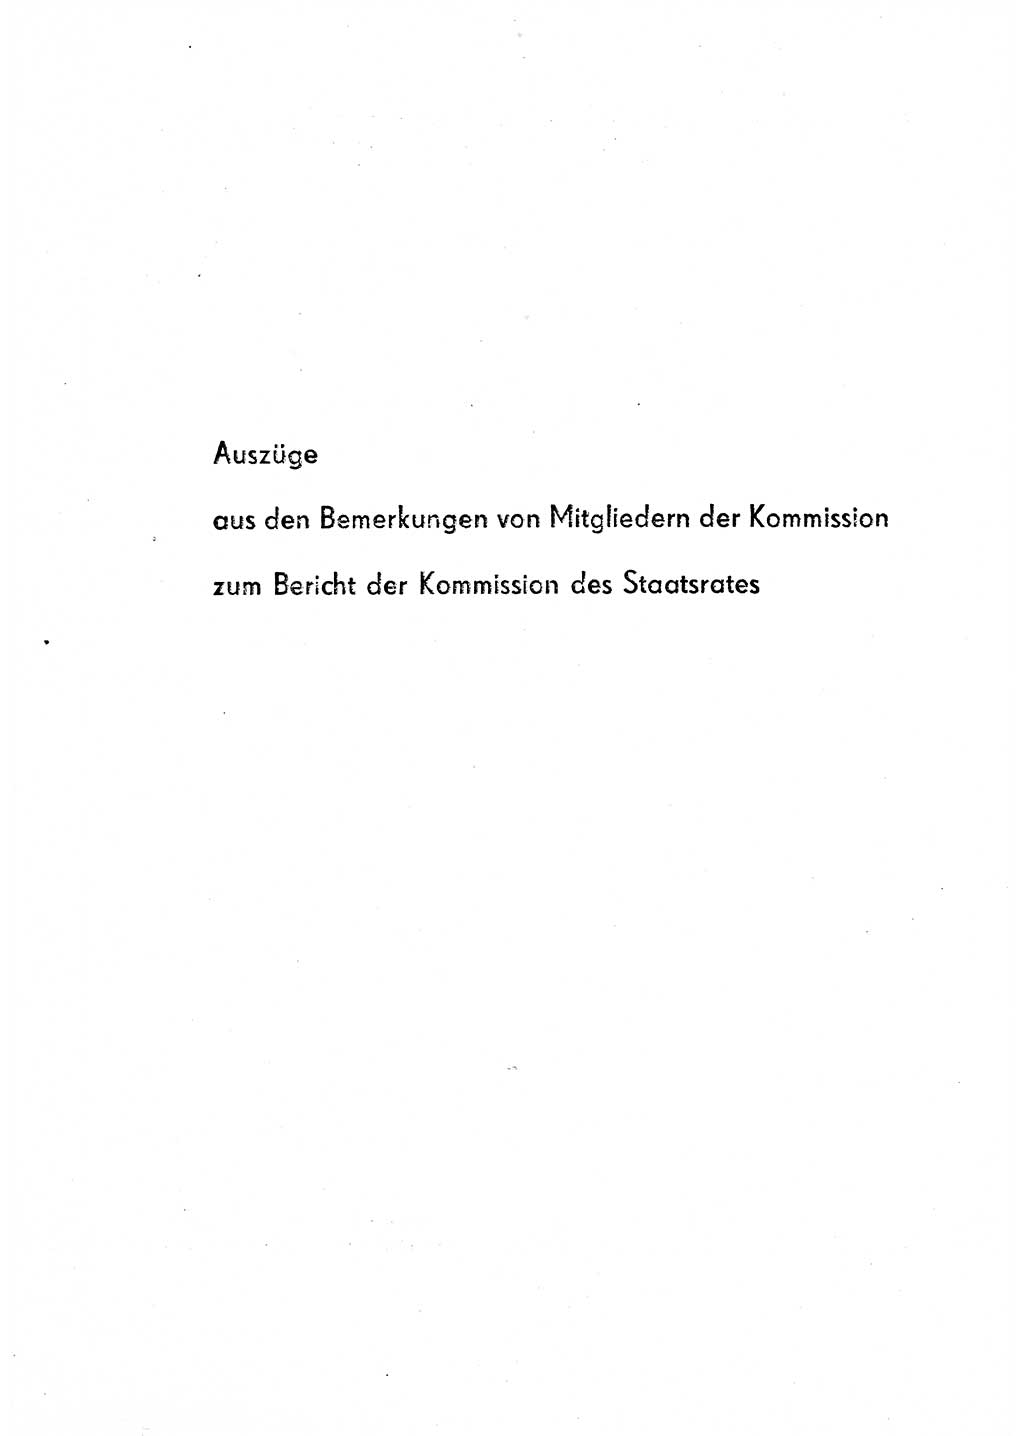 Rechtspflegeerlaß [Deutsche Demokratische Republik (DDR)] 1963, Seite 25 (R.-Pfl.-Erl. DDR 1963, S. 25)